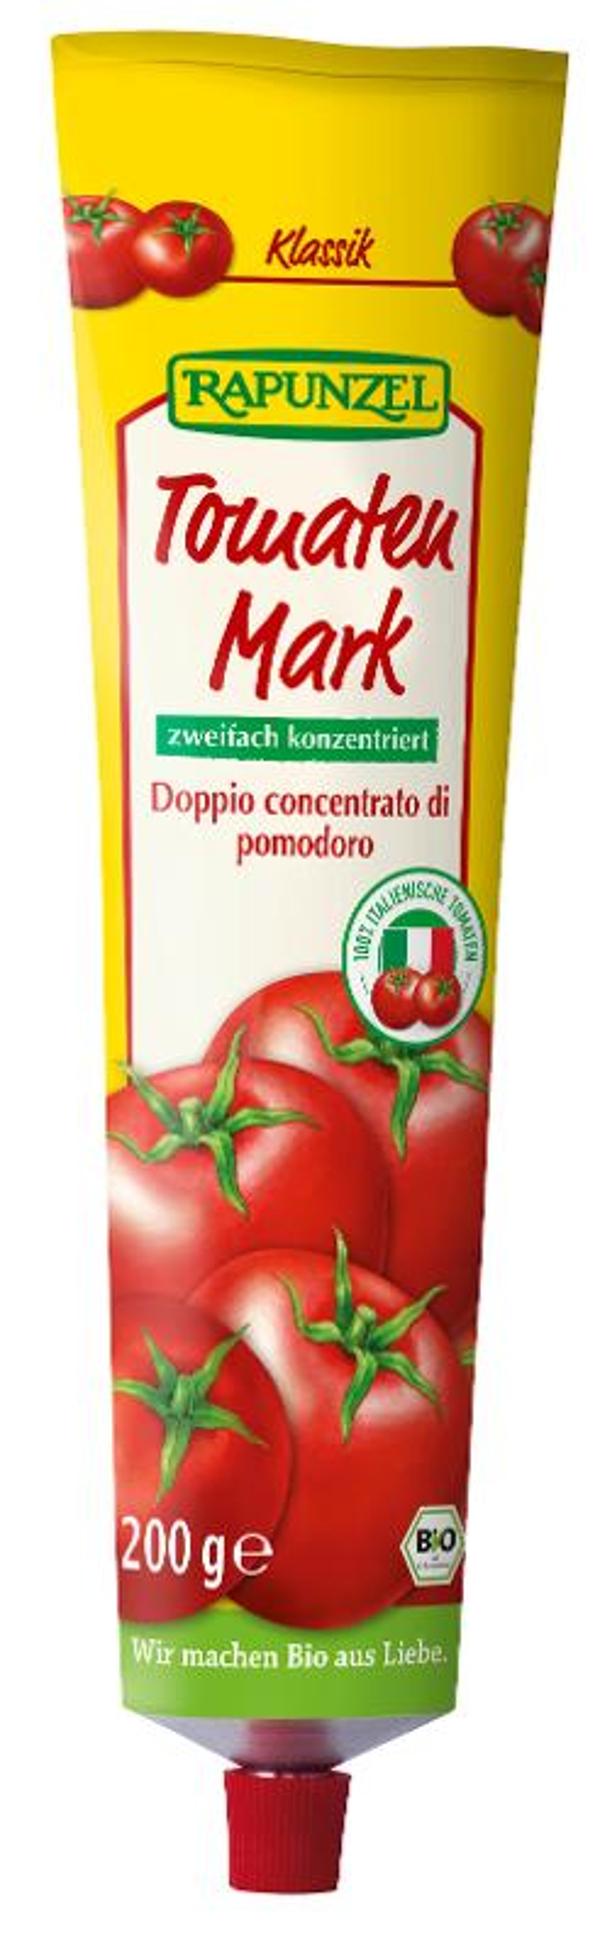 Produktfoto zu Tomatenmark 22% in der Tube von Rapunzel